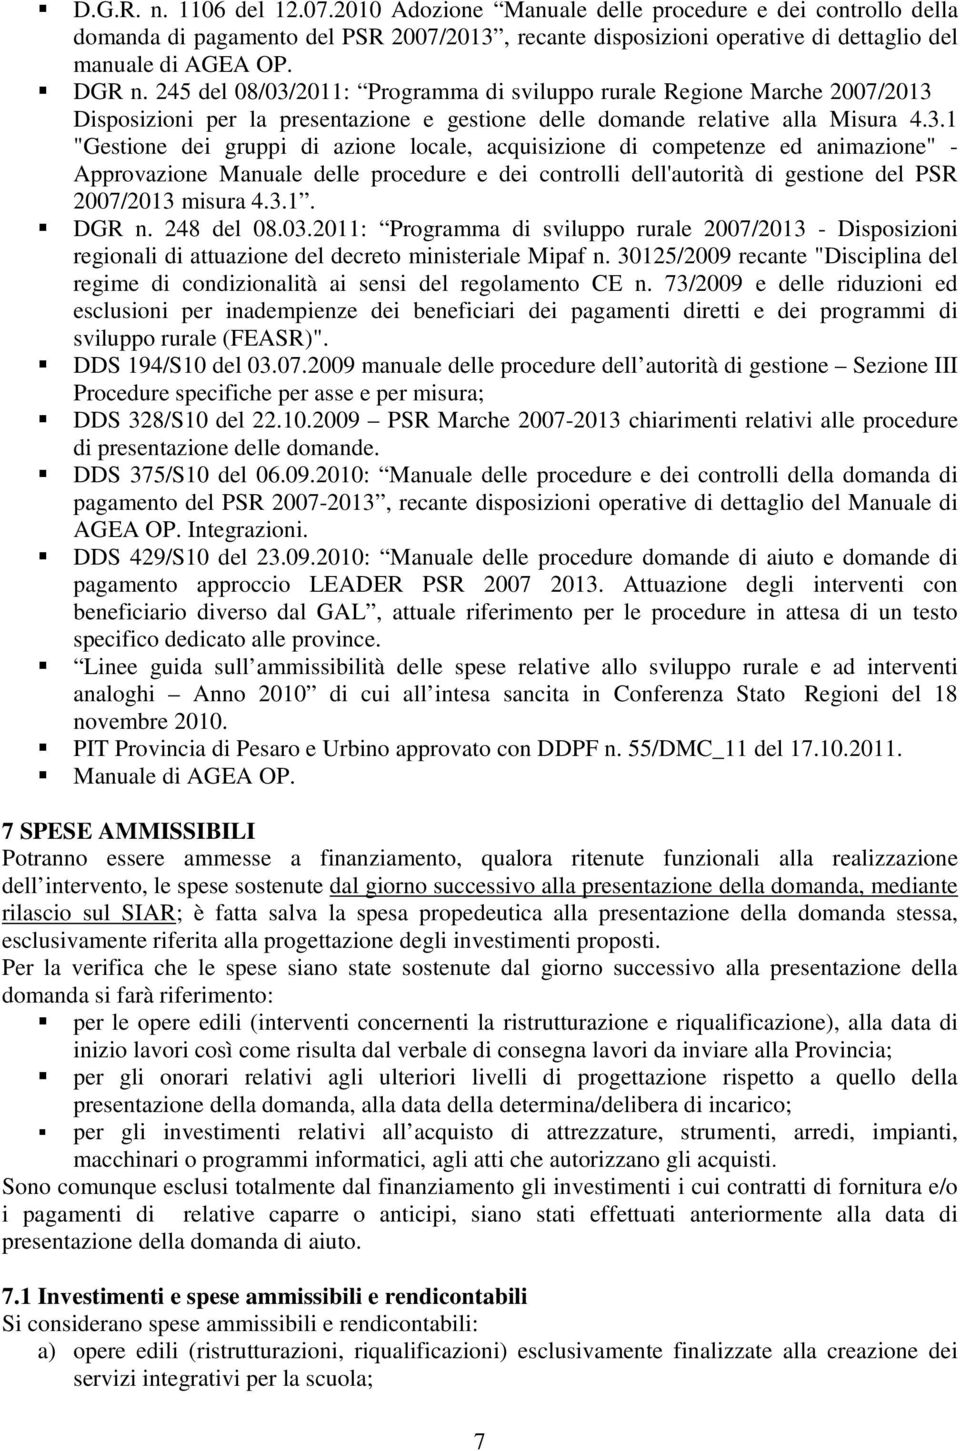 2011: Programma di sviluppo rurale Regione Marche 2007/2013 